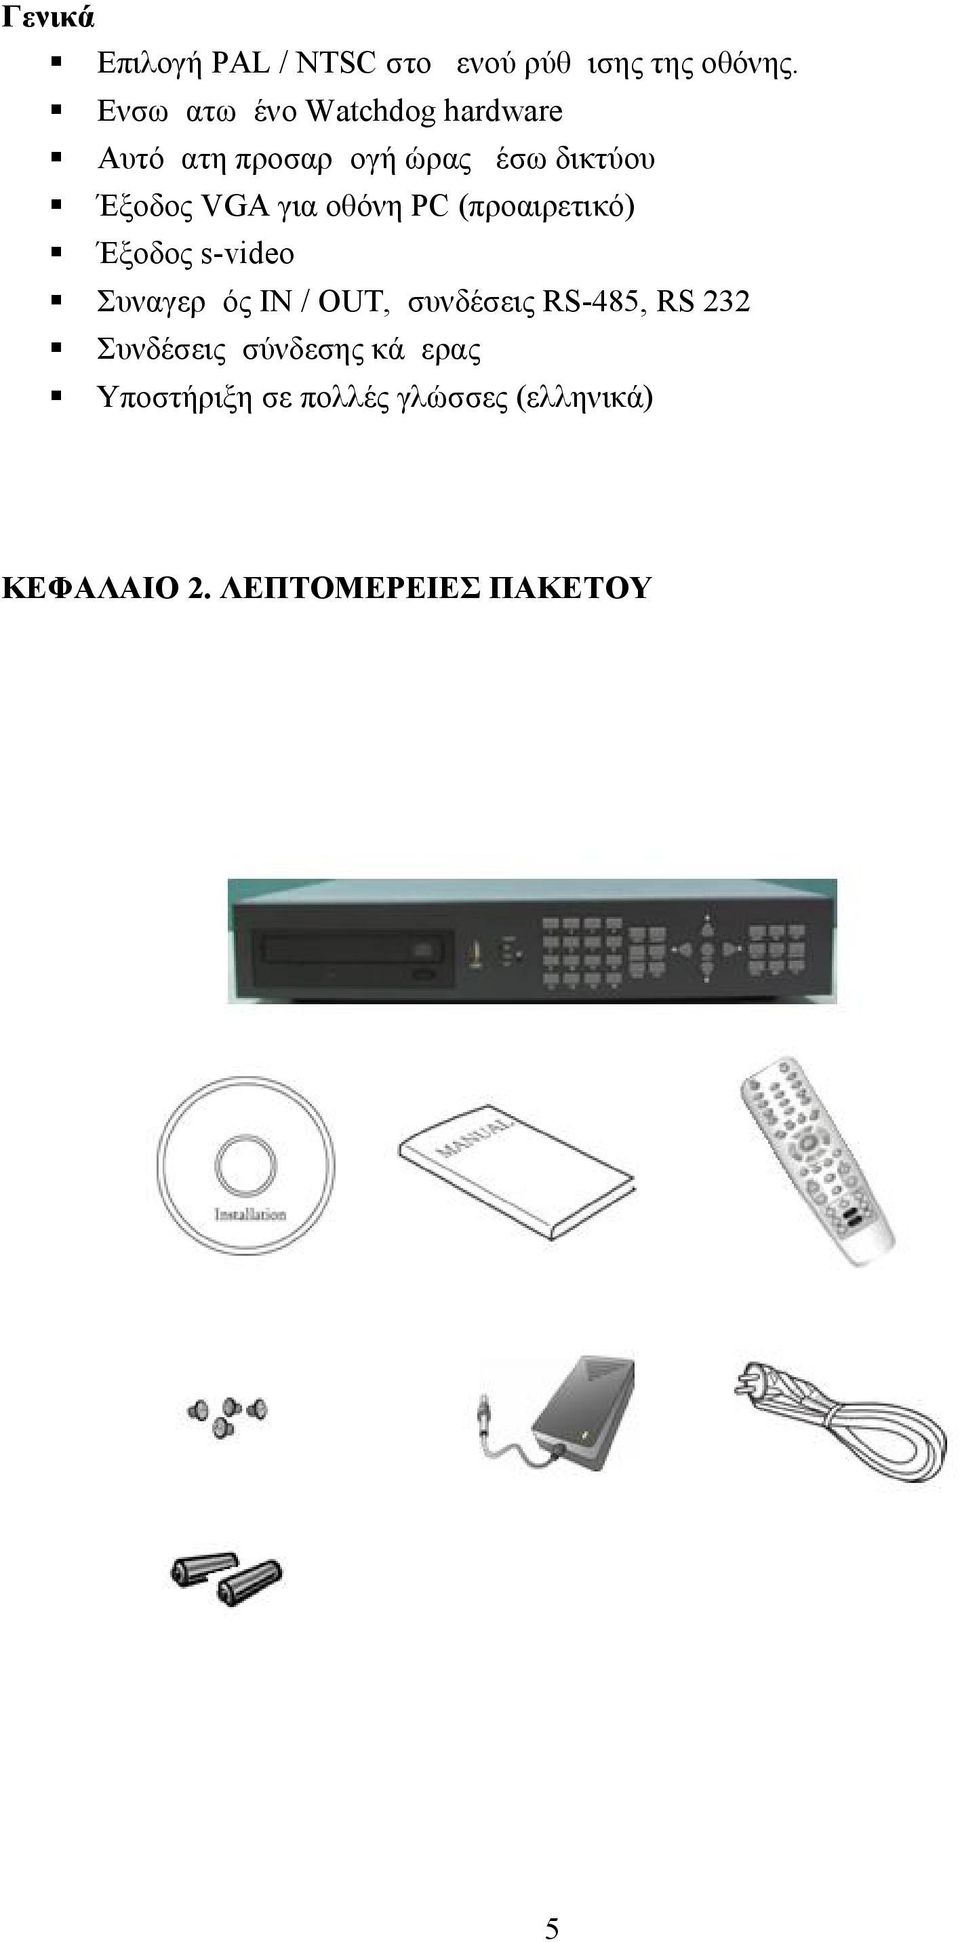 για οθόνη PC (προαιρετικό) Έξοδος s-video Συναγερμός IN / OUT, συνδέσεις RS-485,